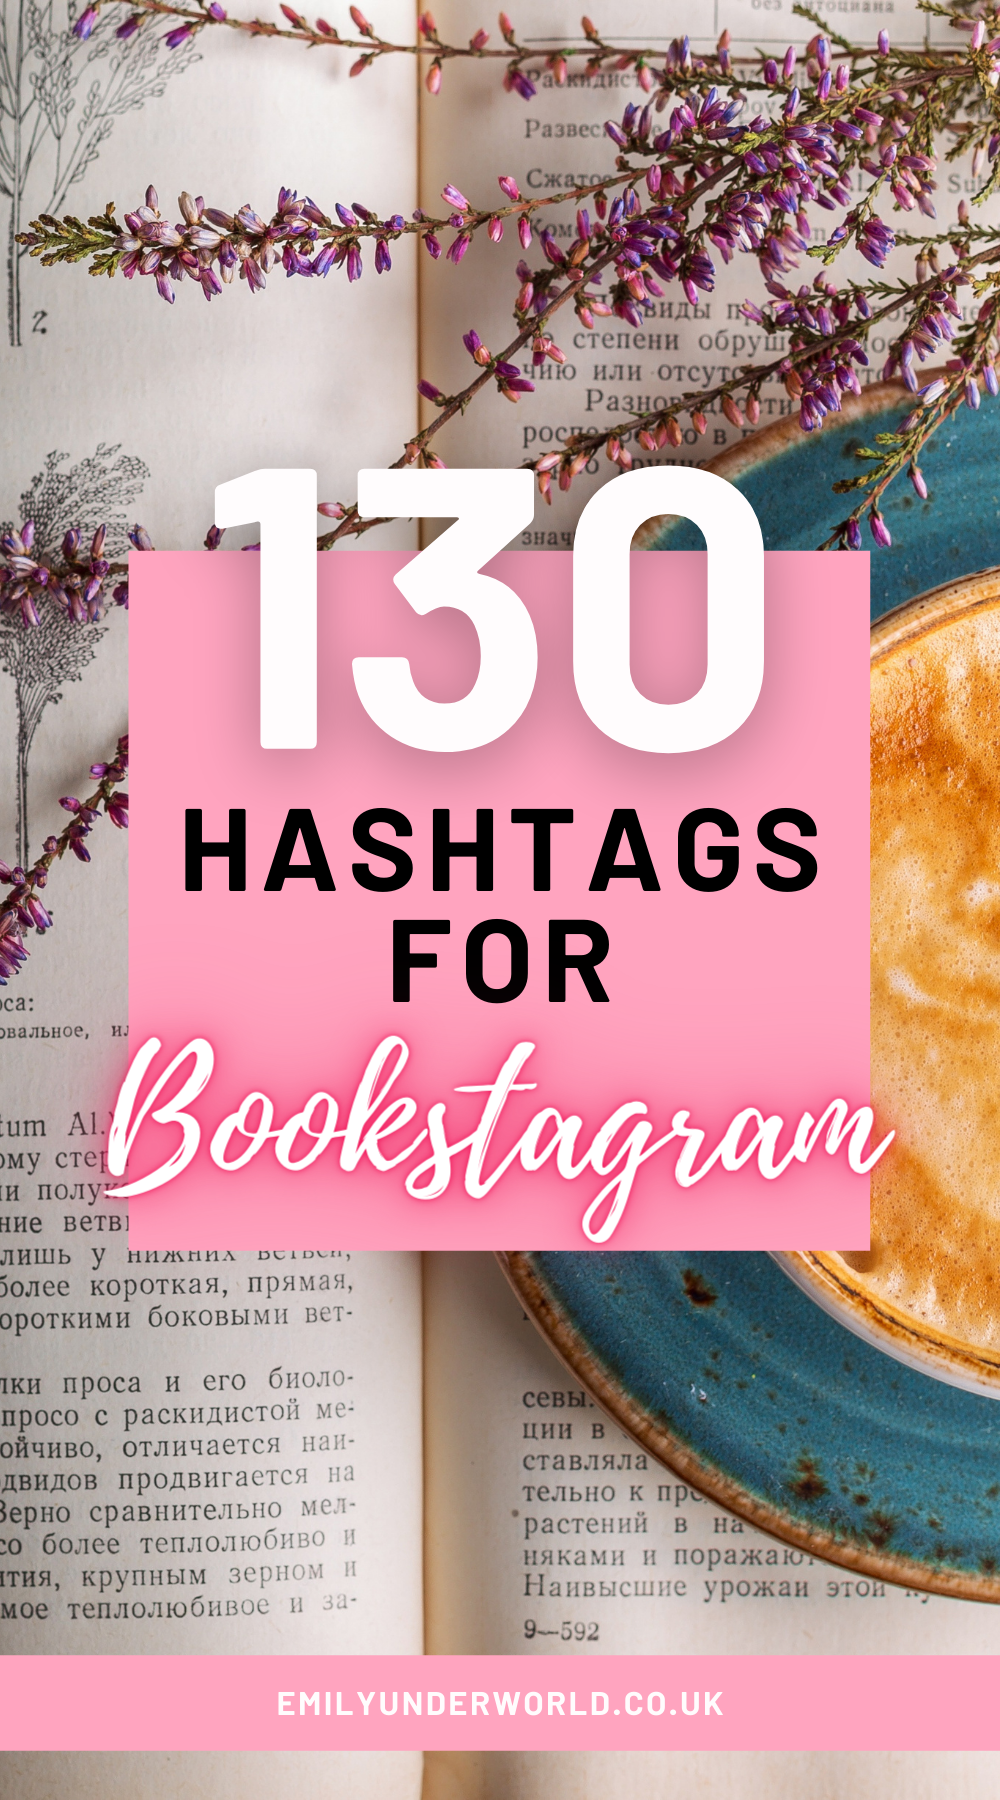 130 Hashtags for Bookstagram